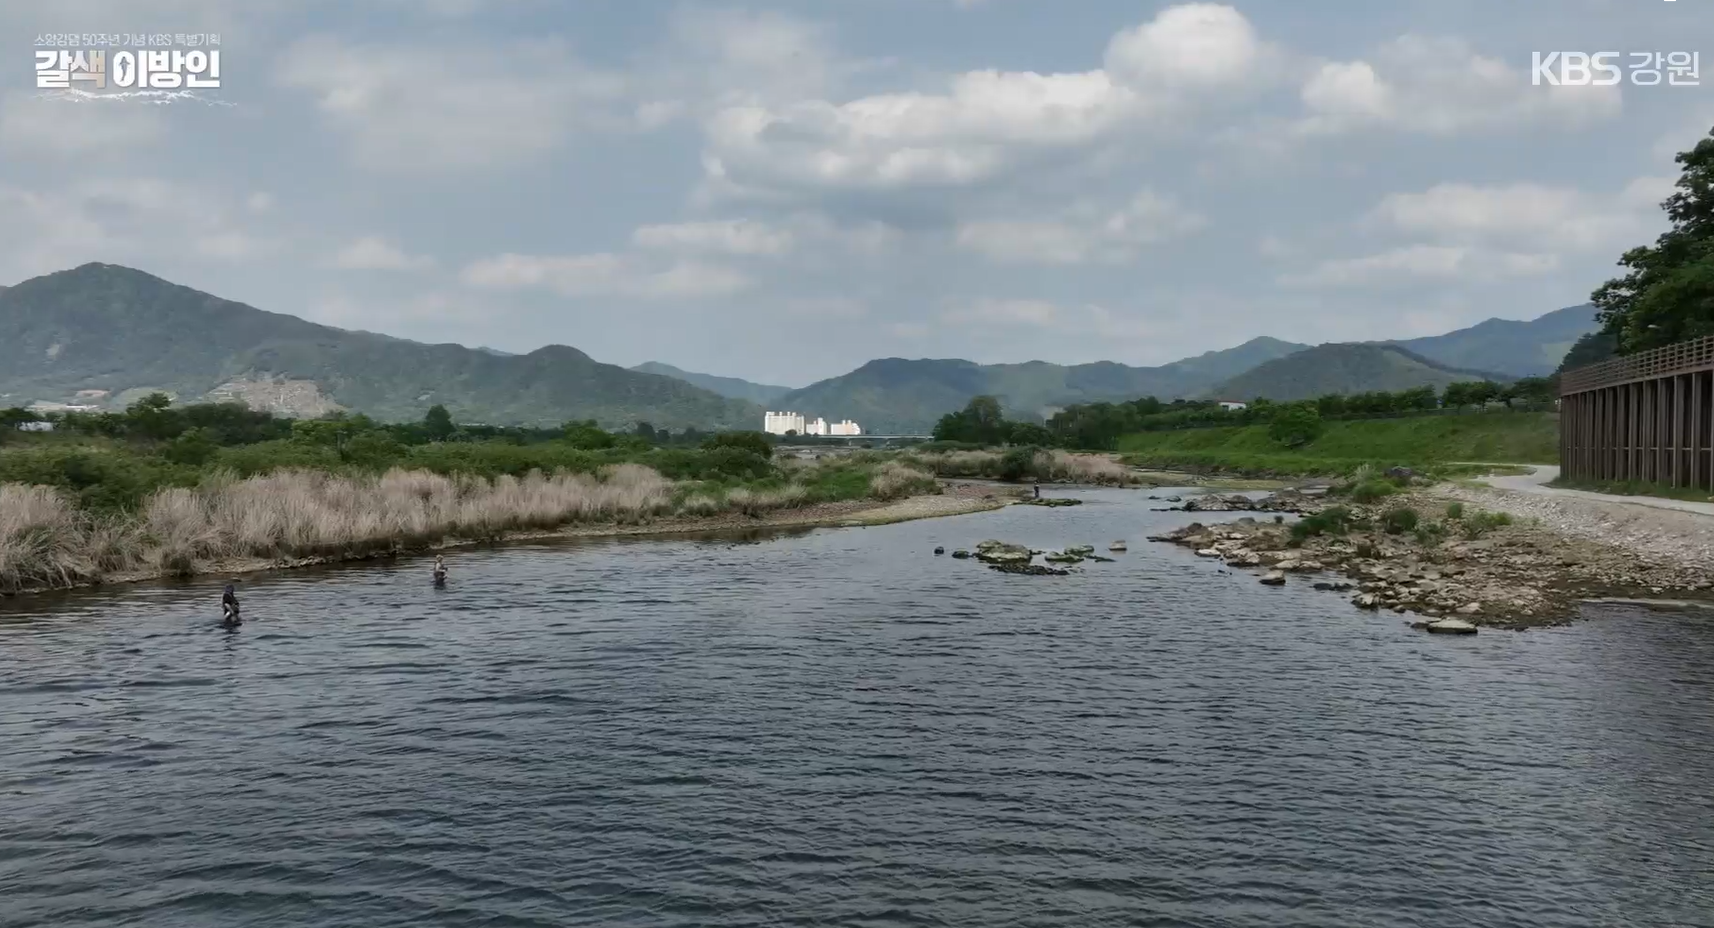 ‘브라운송어 낚시의 성지’가 된 강원도 춘천 소양강